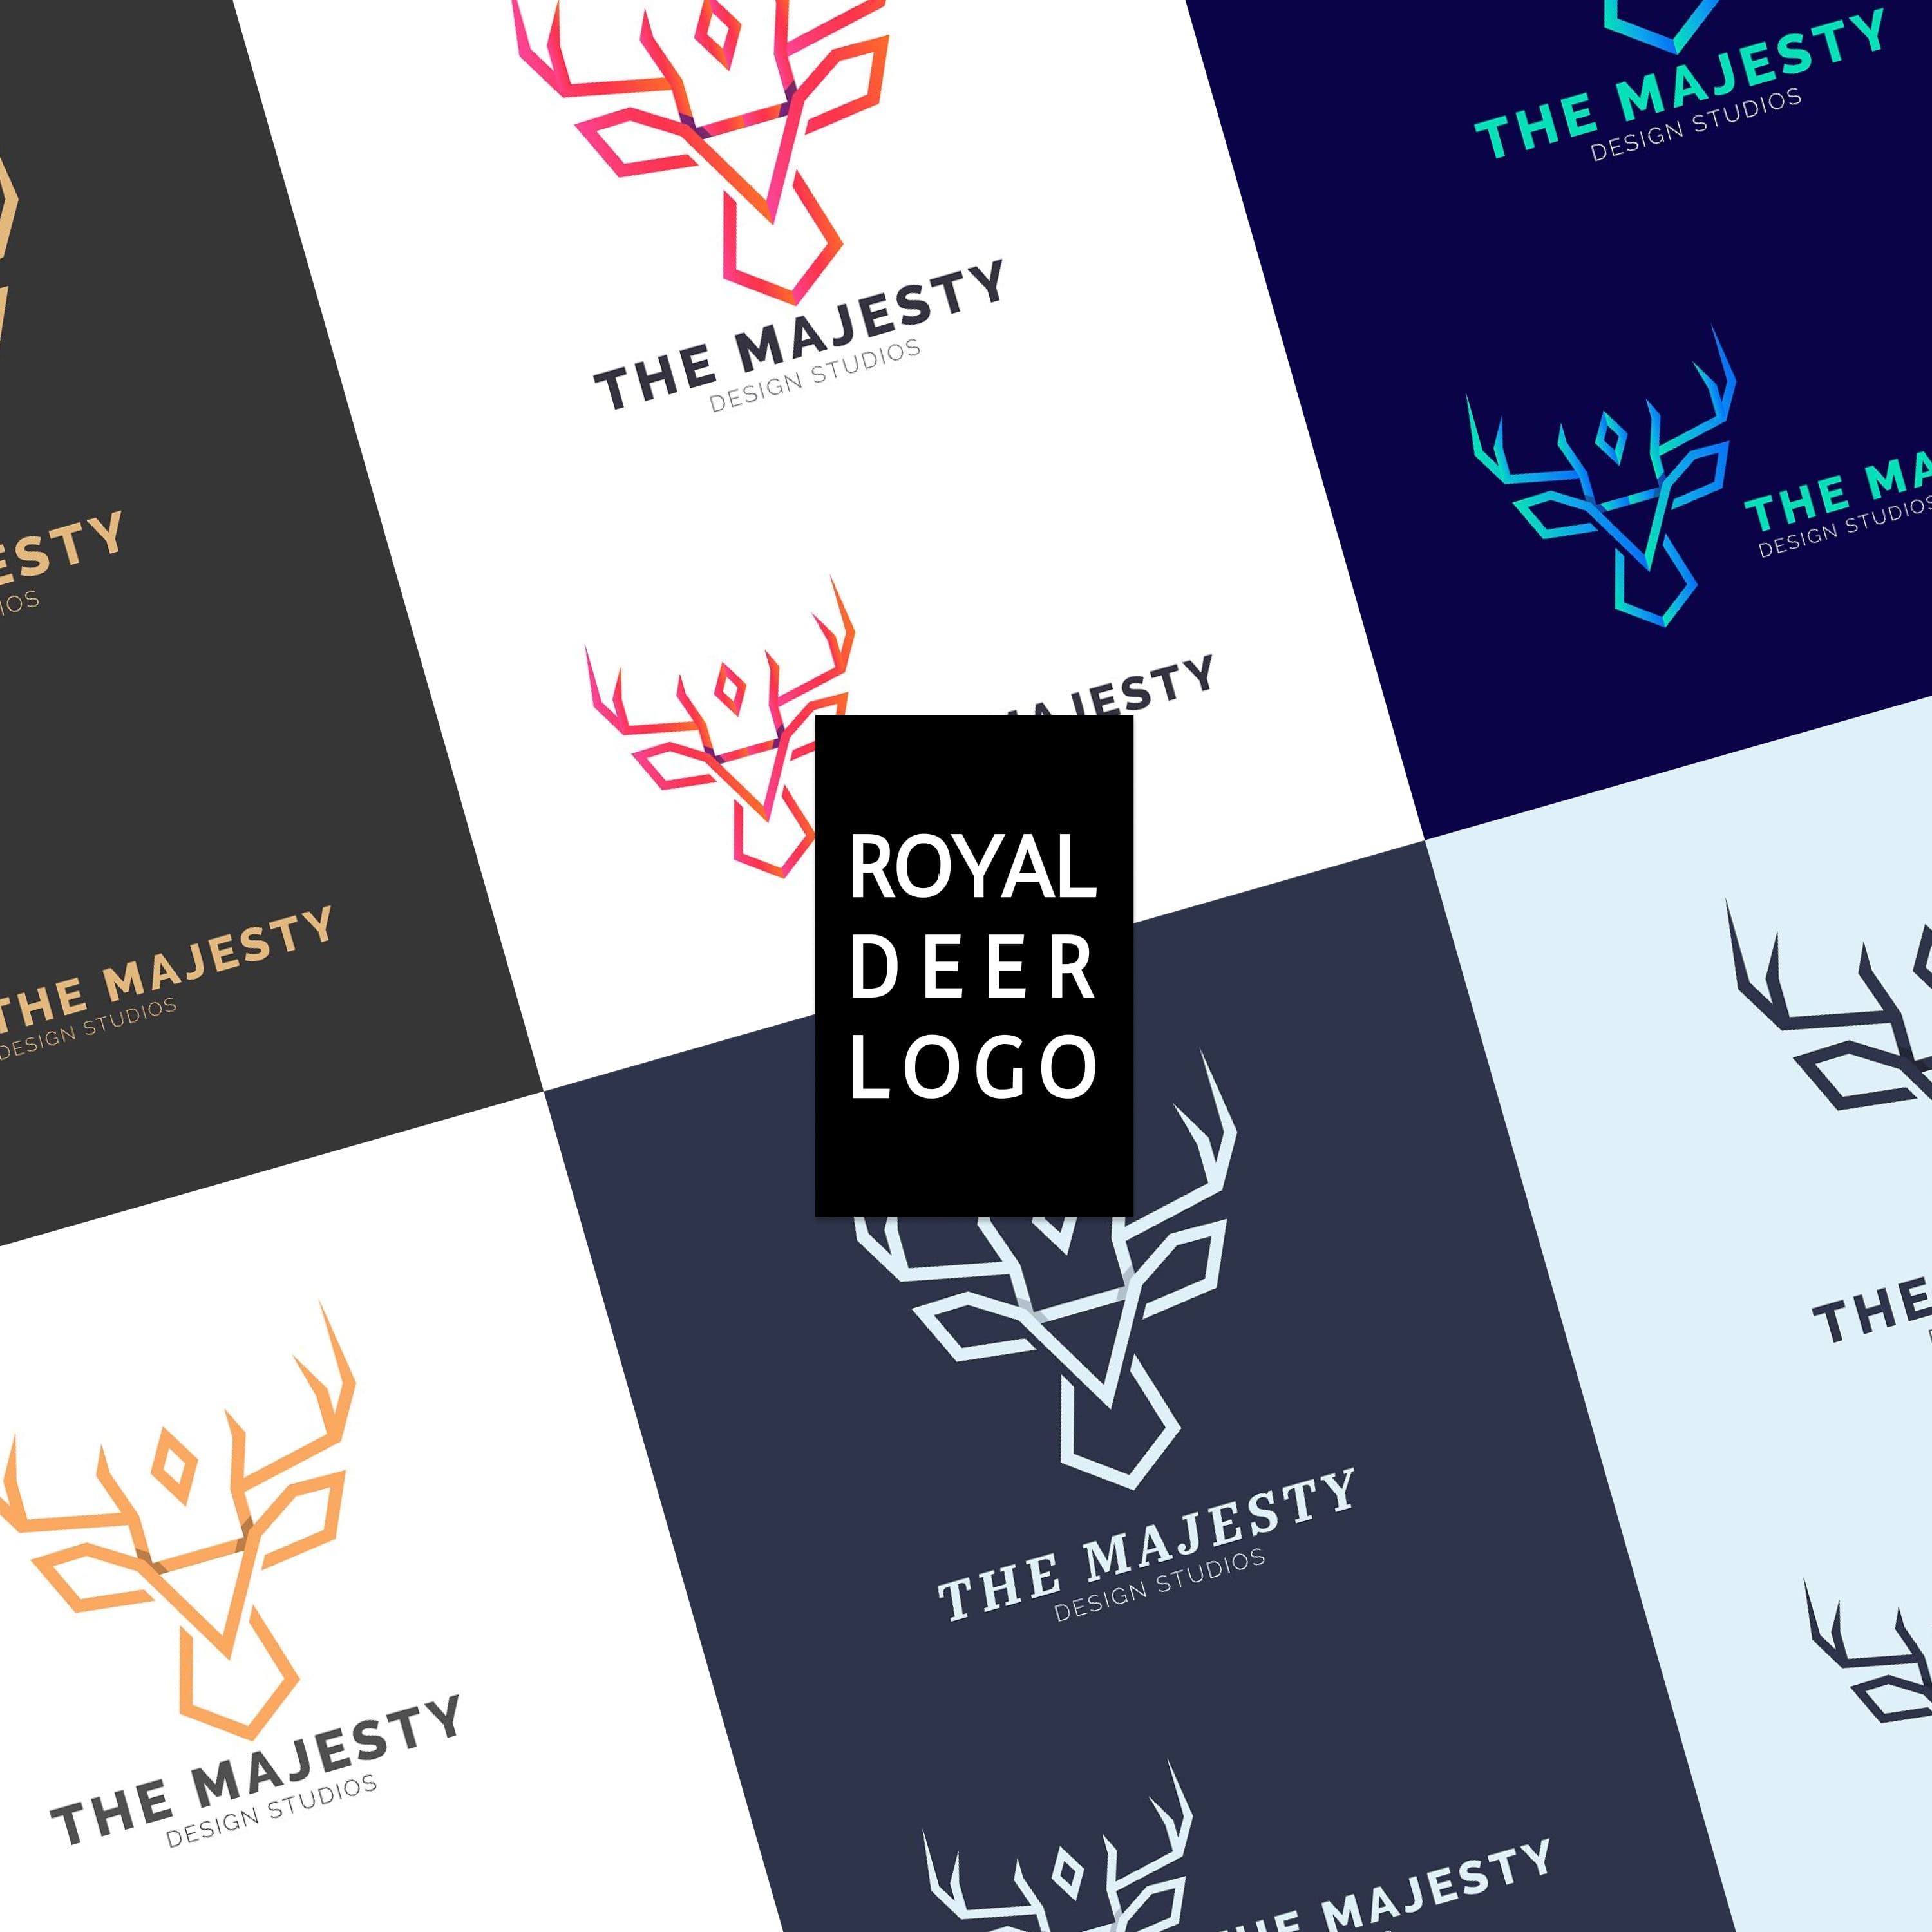 Royal Deer Logo cover.